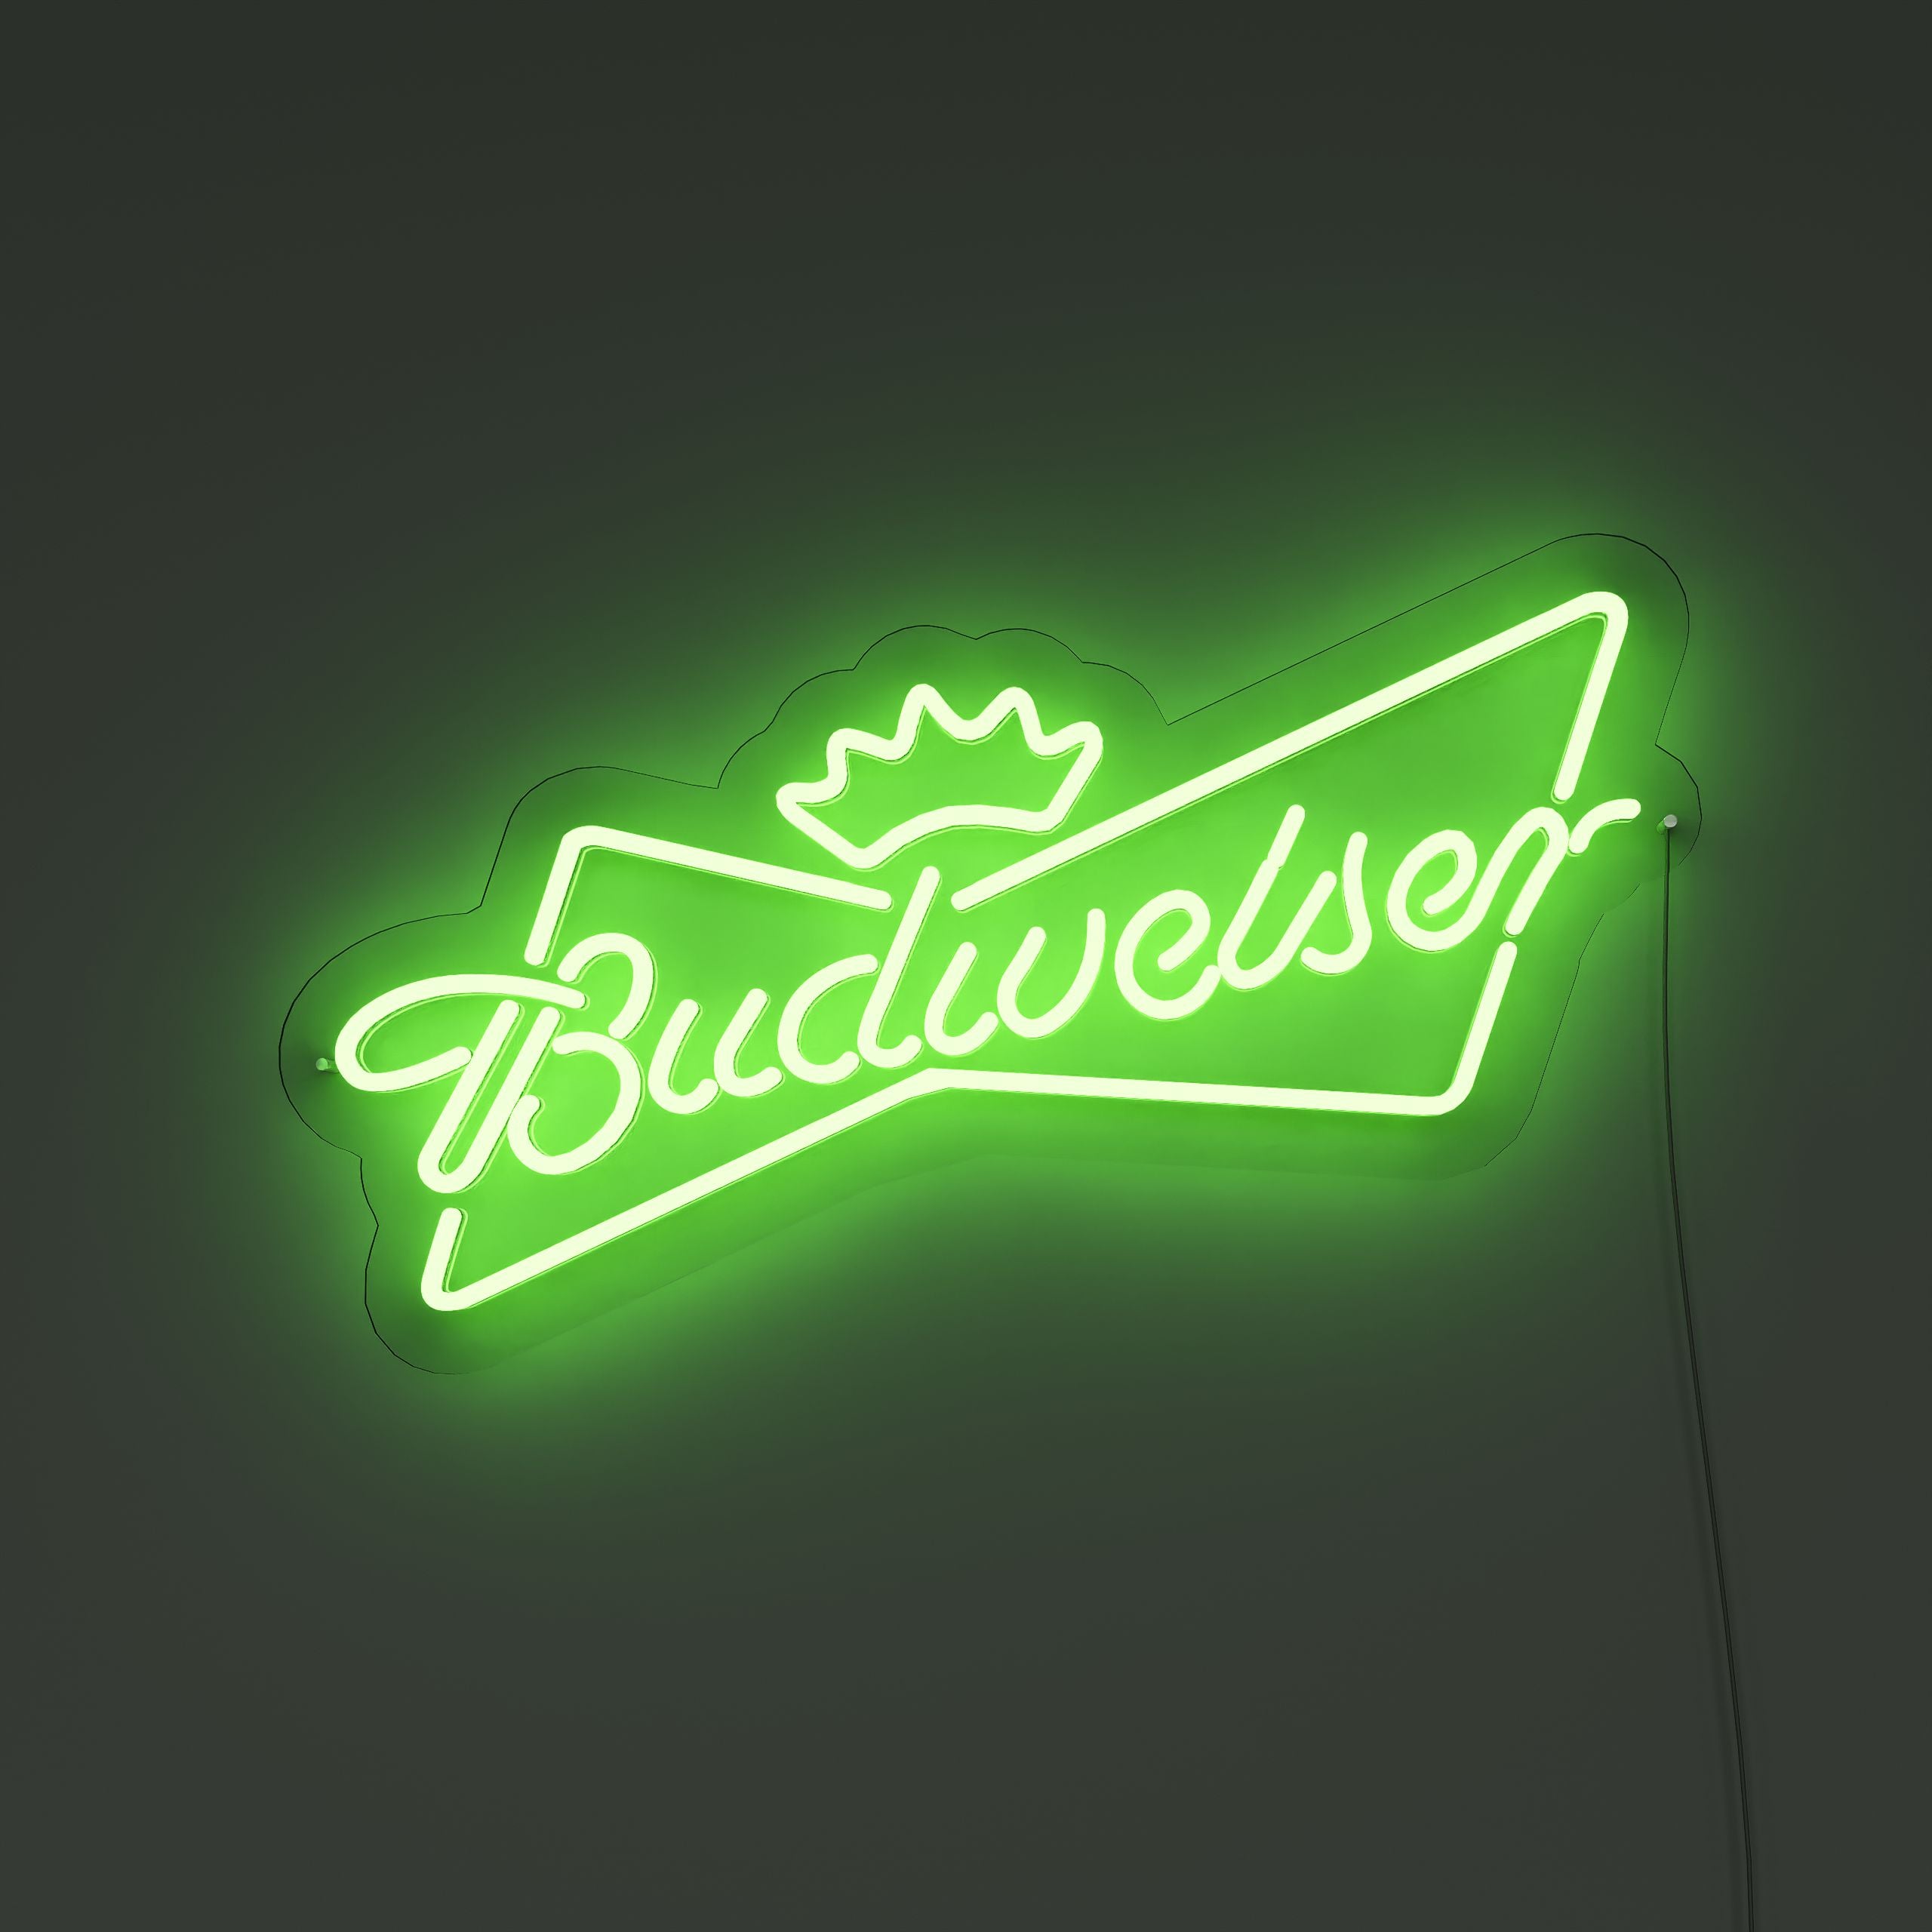 tbudweiser-neon-signs-ForestGreer-Neon-sign-Lite